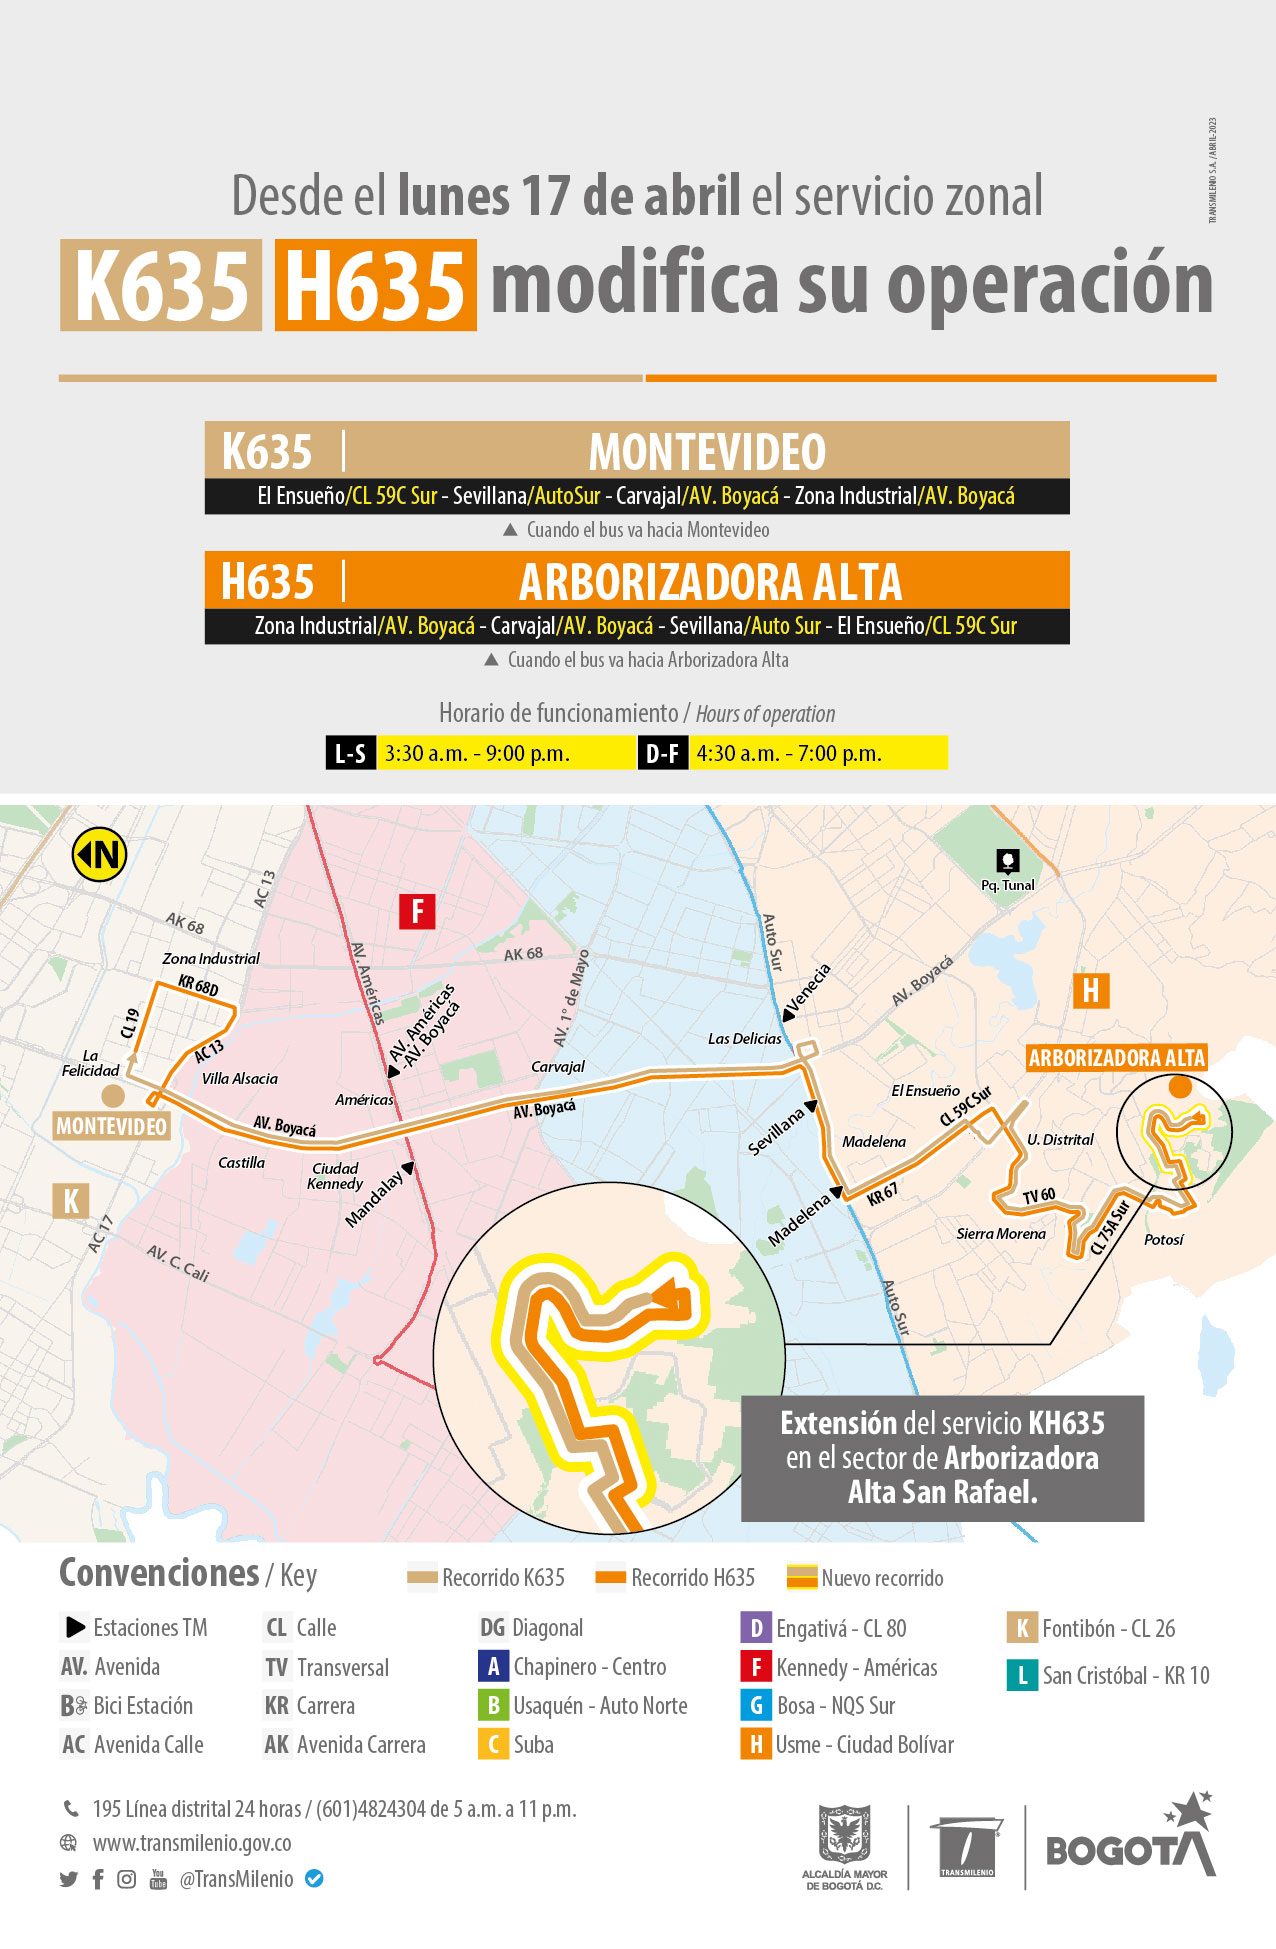 El servicio zonal K635 Montevideo - H635 Arborizadora Alta extiende su operación 